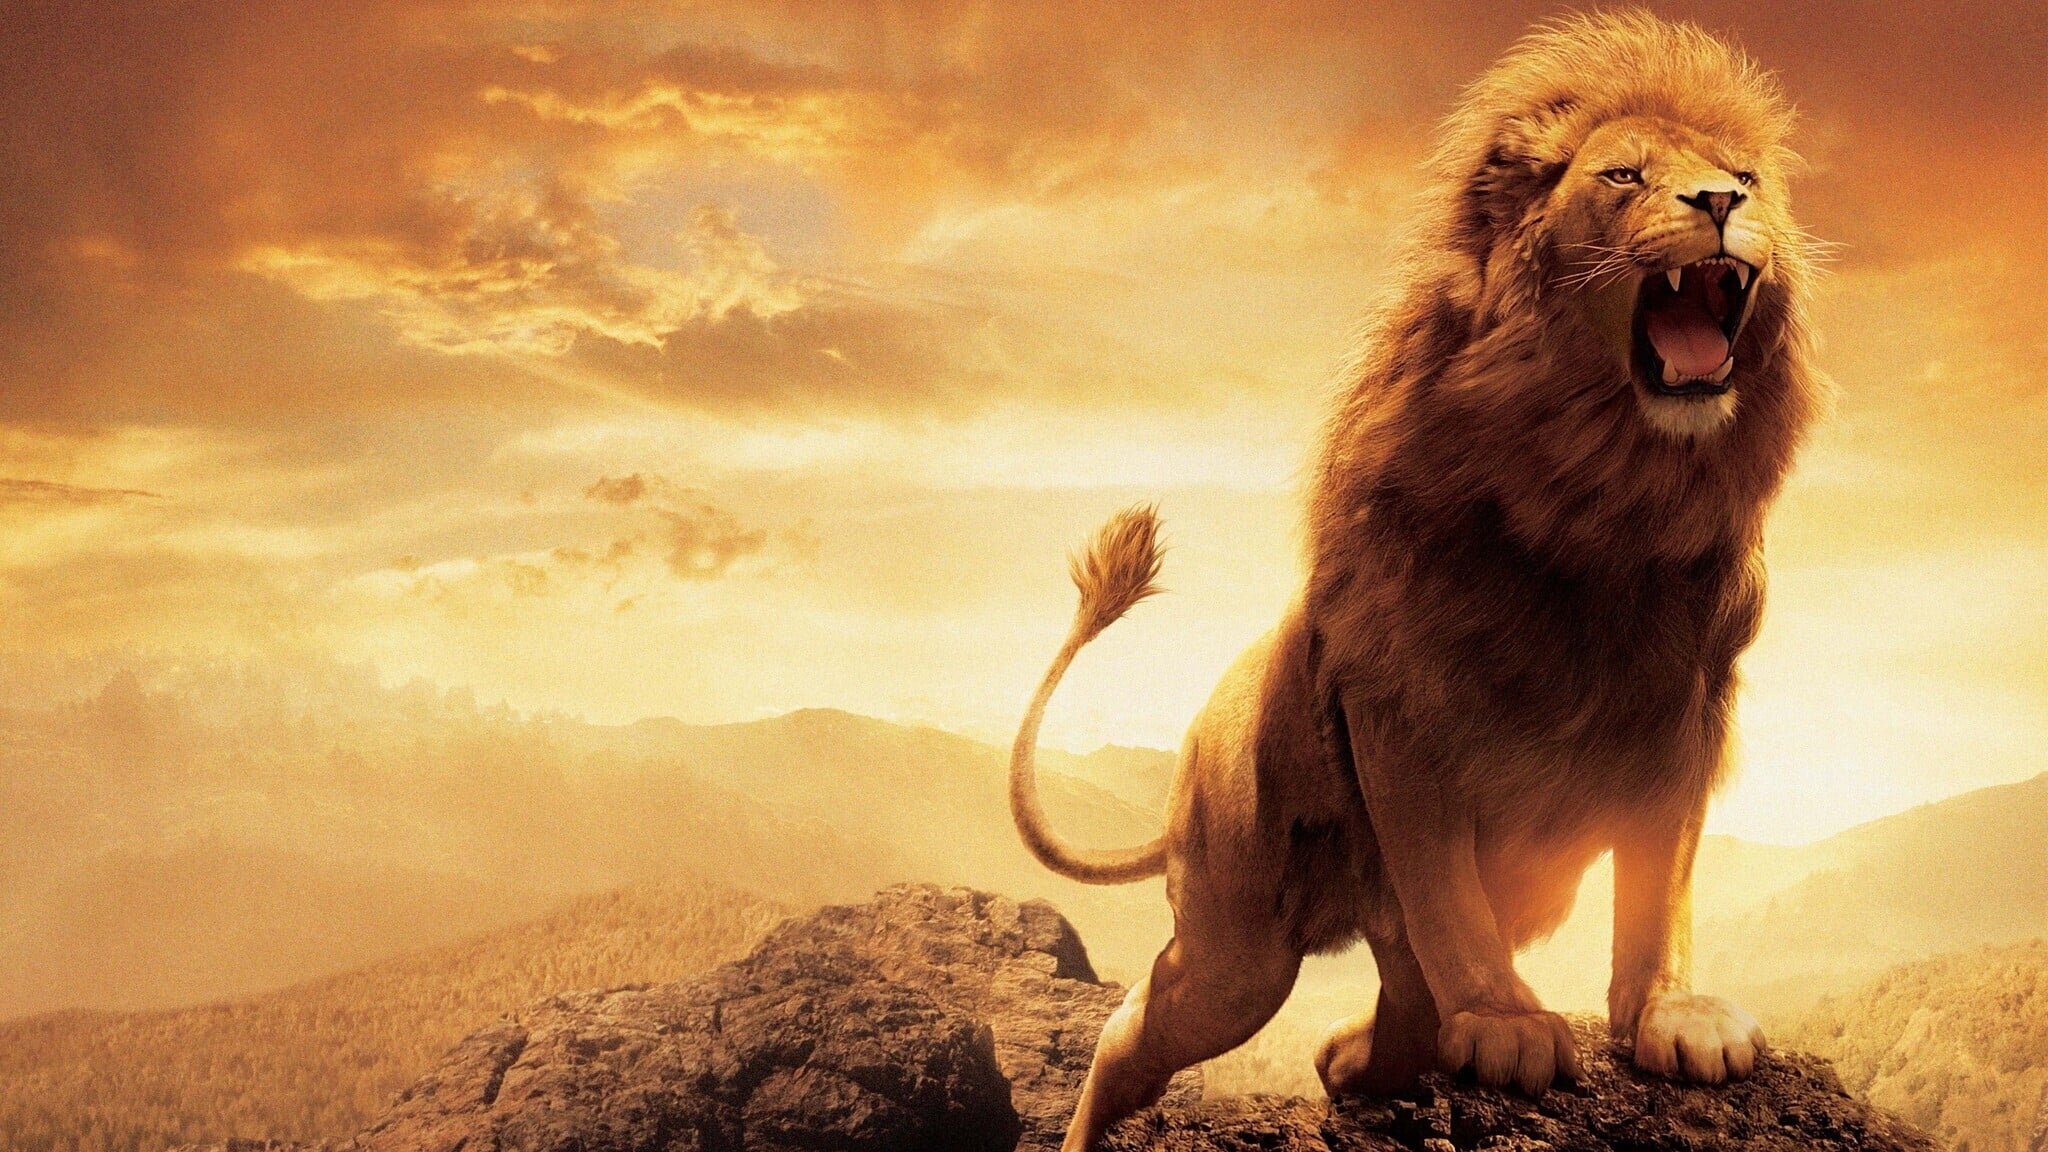 纳尼亚传奇：狮子、女巫和魔衣橱 (2005)